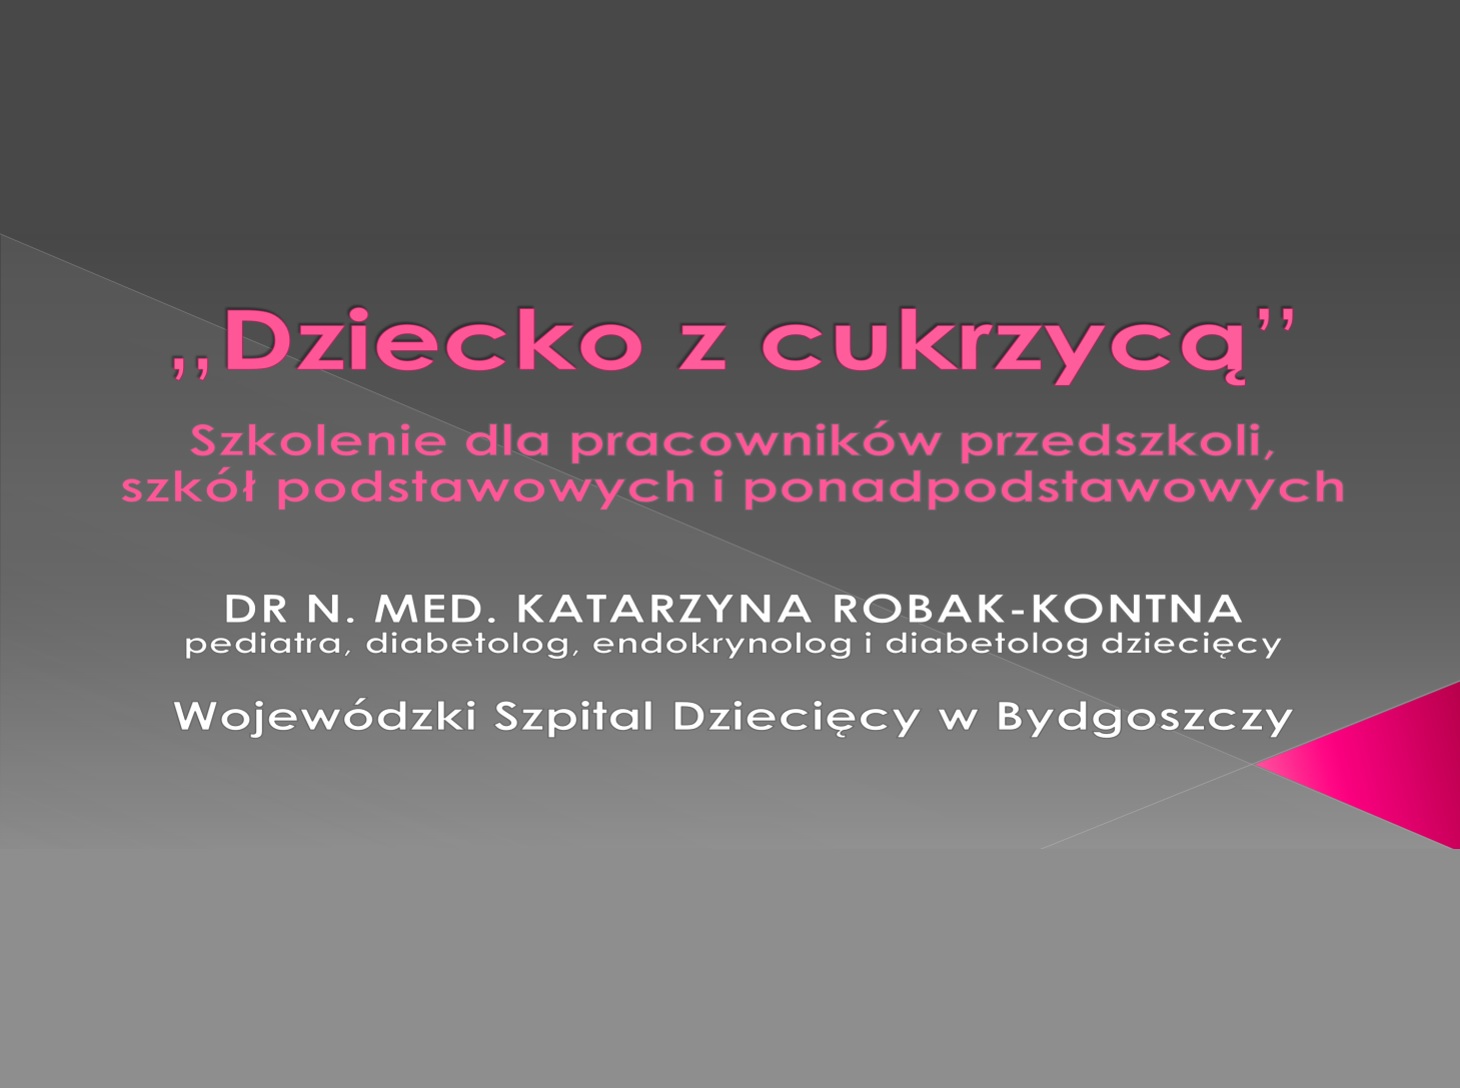 Dziecko z cukrzycą - szkolenie. Dr n. med. Katarzyna Robak-Kontna, pediatra, diabetolog dzicięcy